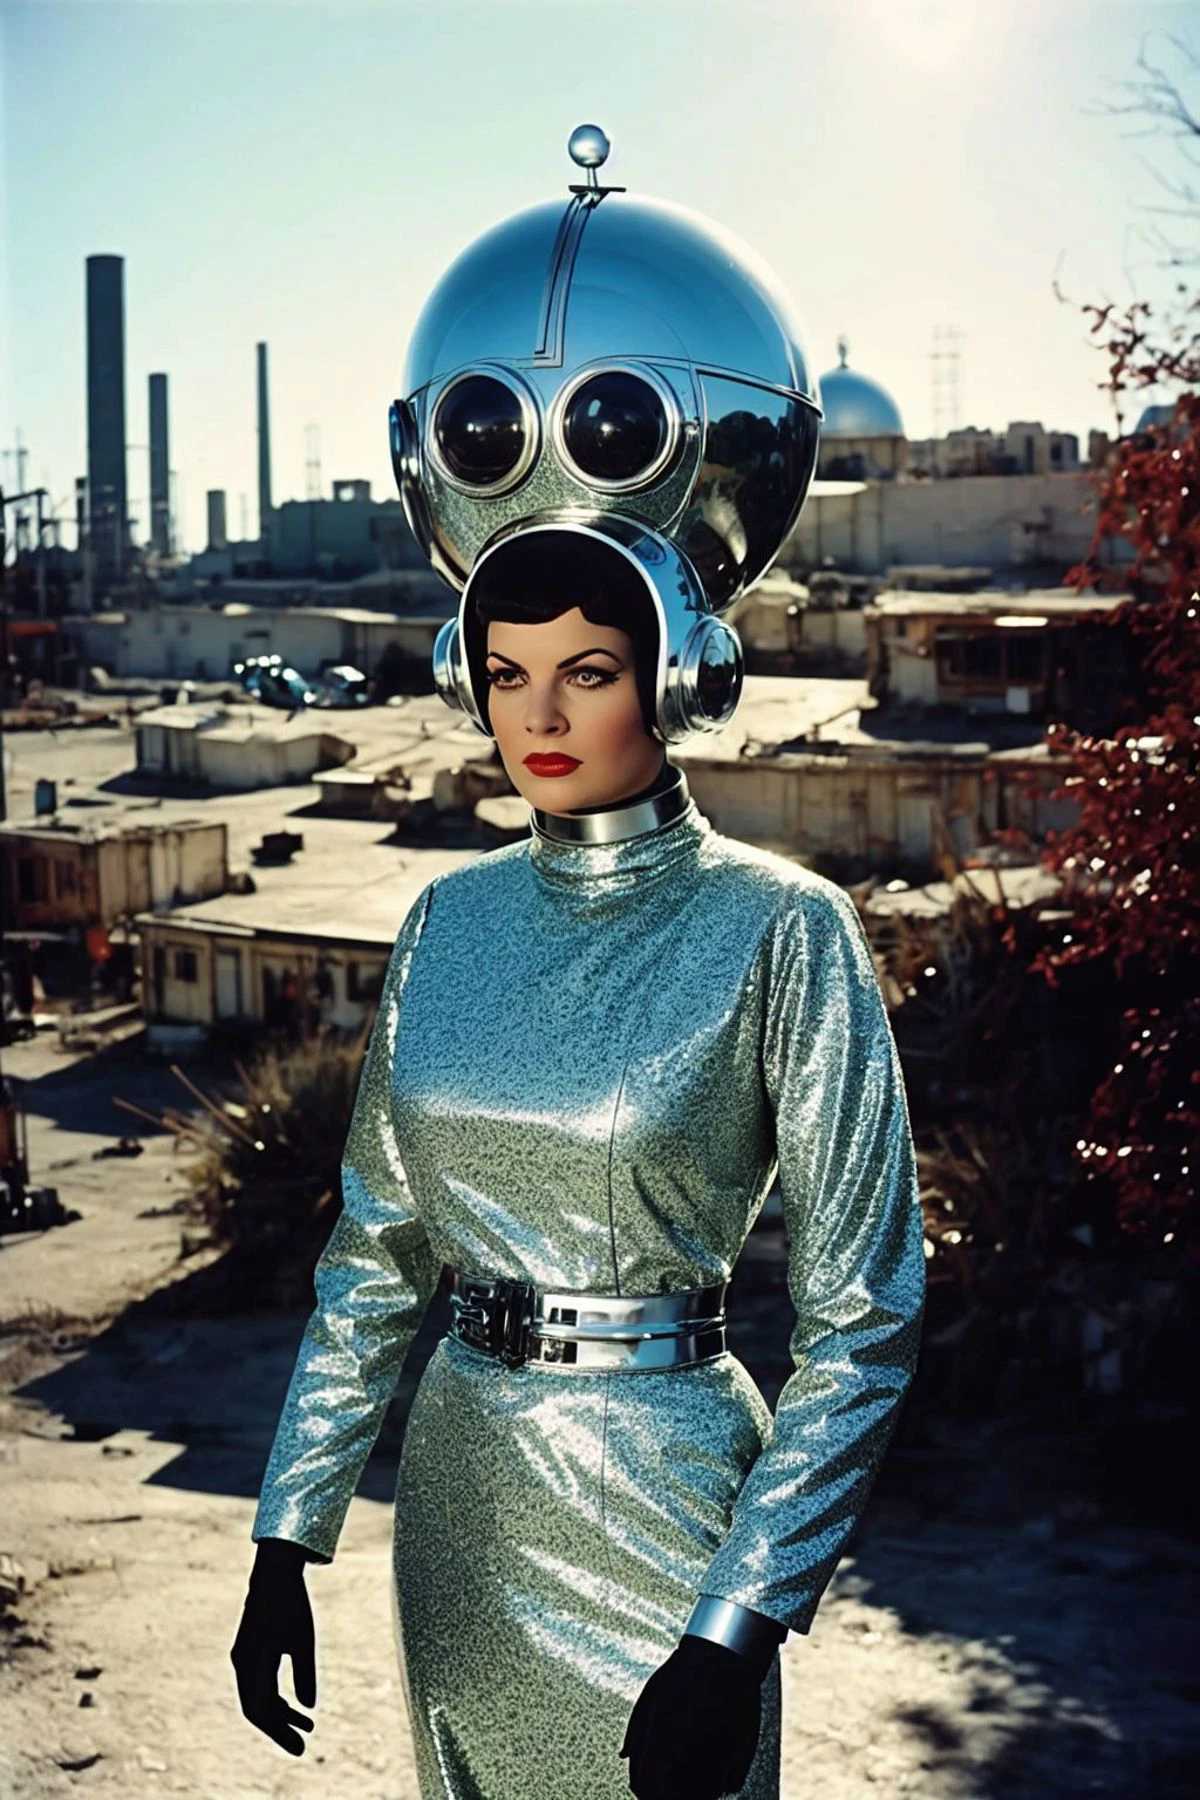 манерный аналоговый фильм, кадр из советского научно-фантастического фильма 1960-х годов.,  Греческая женщина-заводной андроид в образе киборга с позитронной головой, заводная упряжь, (СФВ:1.2), Эклектичный интерьер биокупола, инопланетные руины на заднем плане, на цыпочках, напряженный взгляд, модная поза, космический глэм-шик, китч,Кинематографический,дурацкий,блеск,ретро, острый фокус, широкоугольный объектив, живописный